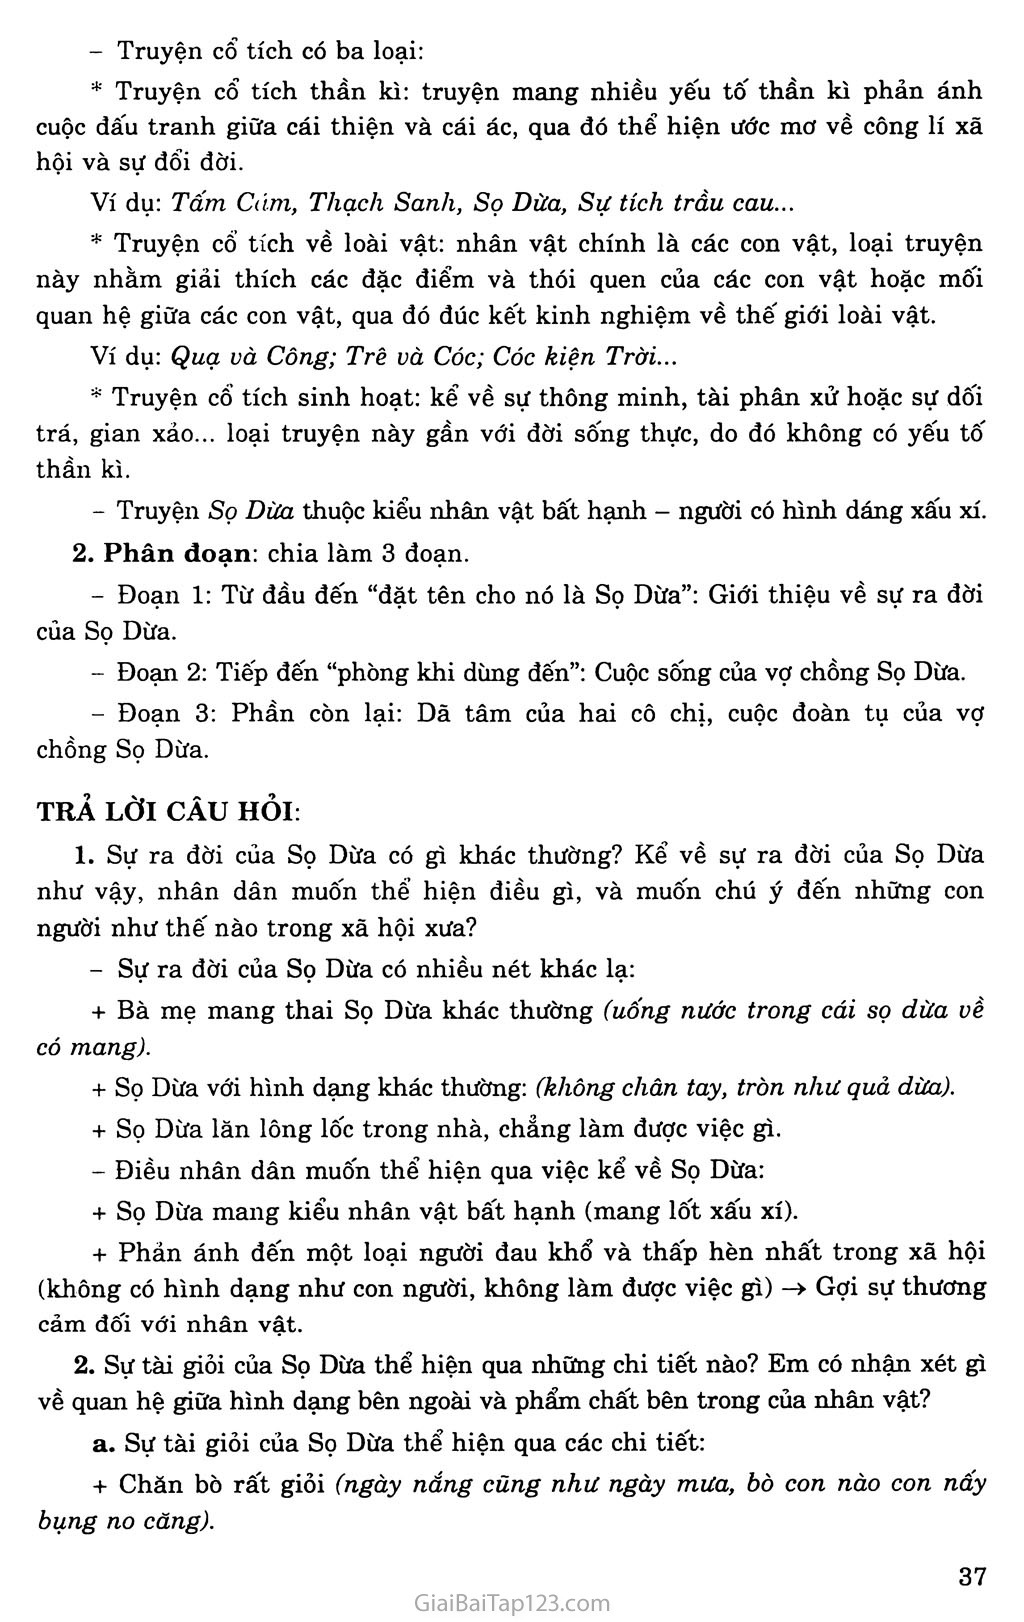 Sọ Dừa (Truyện cổ tích) trang 2